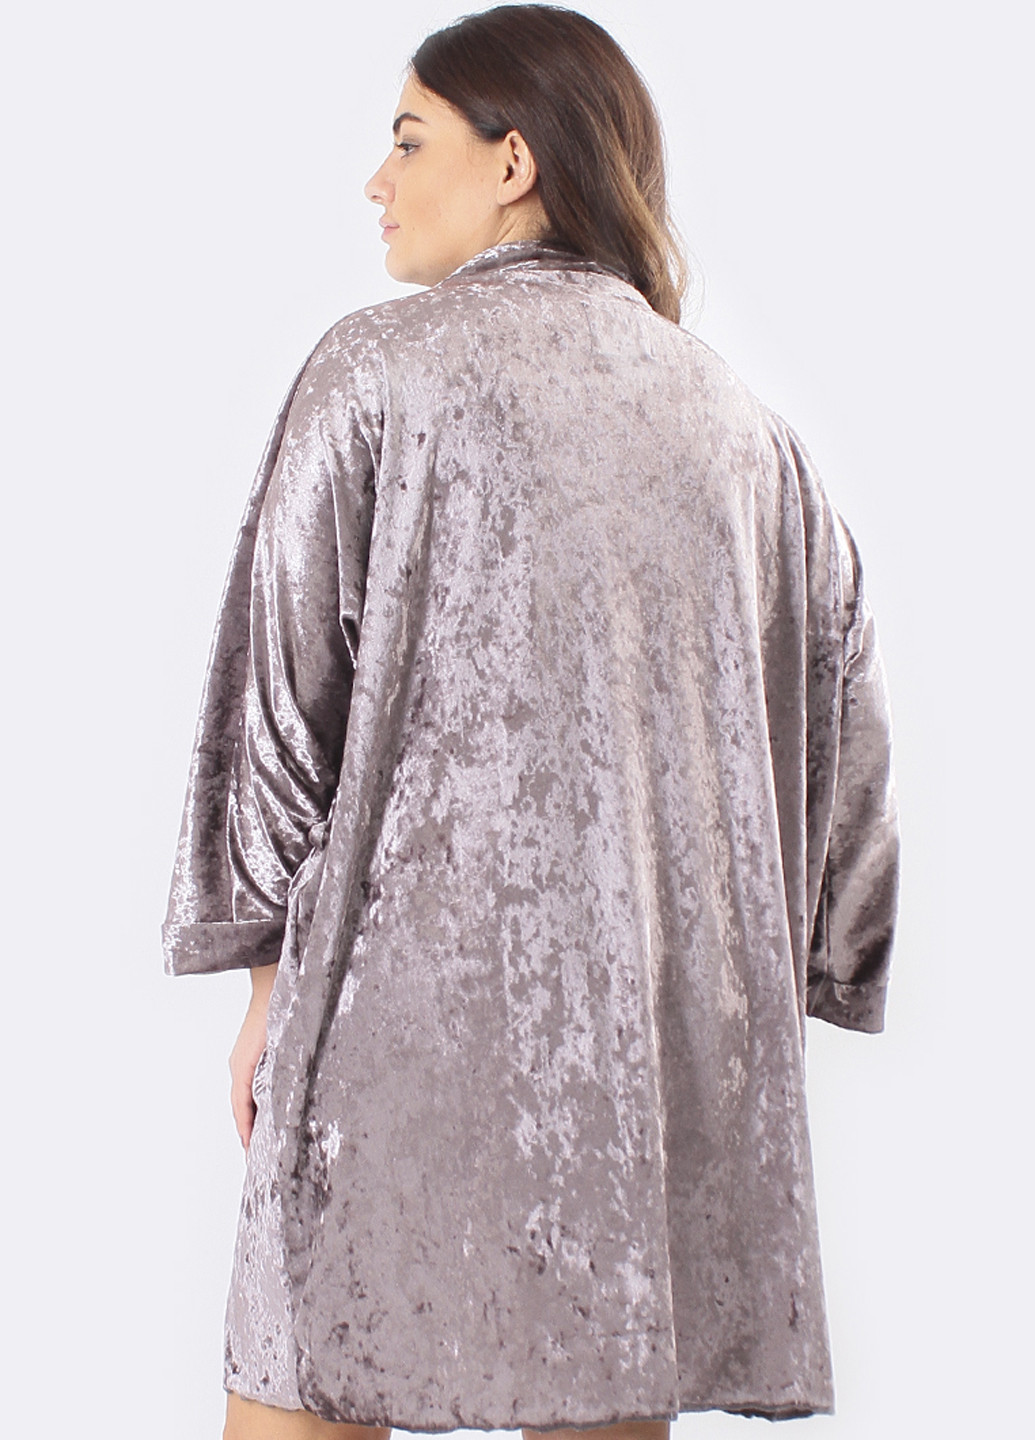 Серо-коричневый демисезонный комплект (ночная рубашка, халат) Ghazel